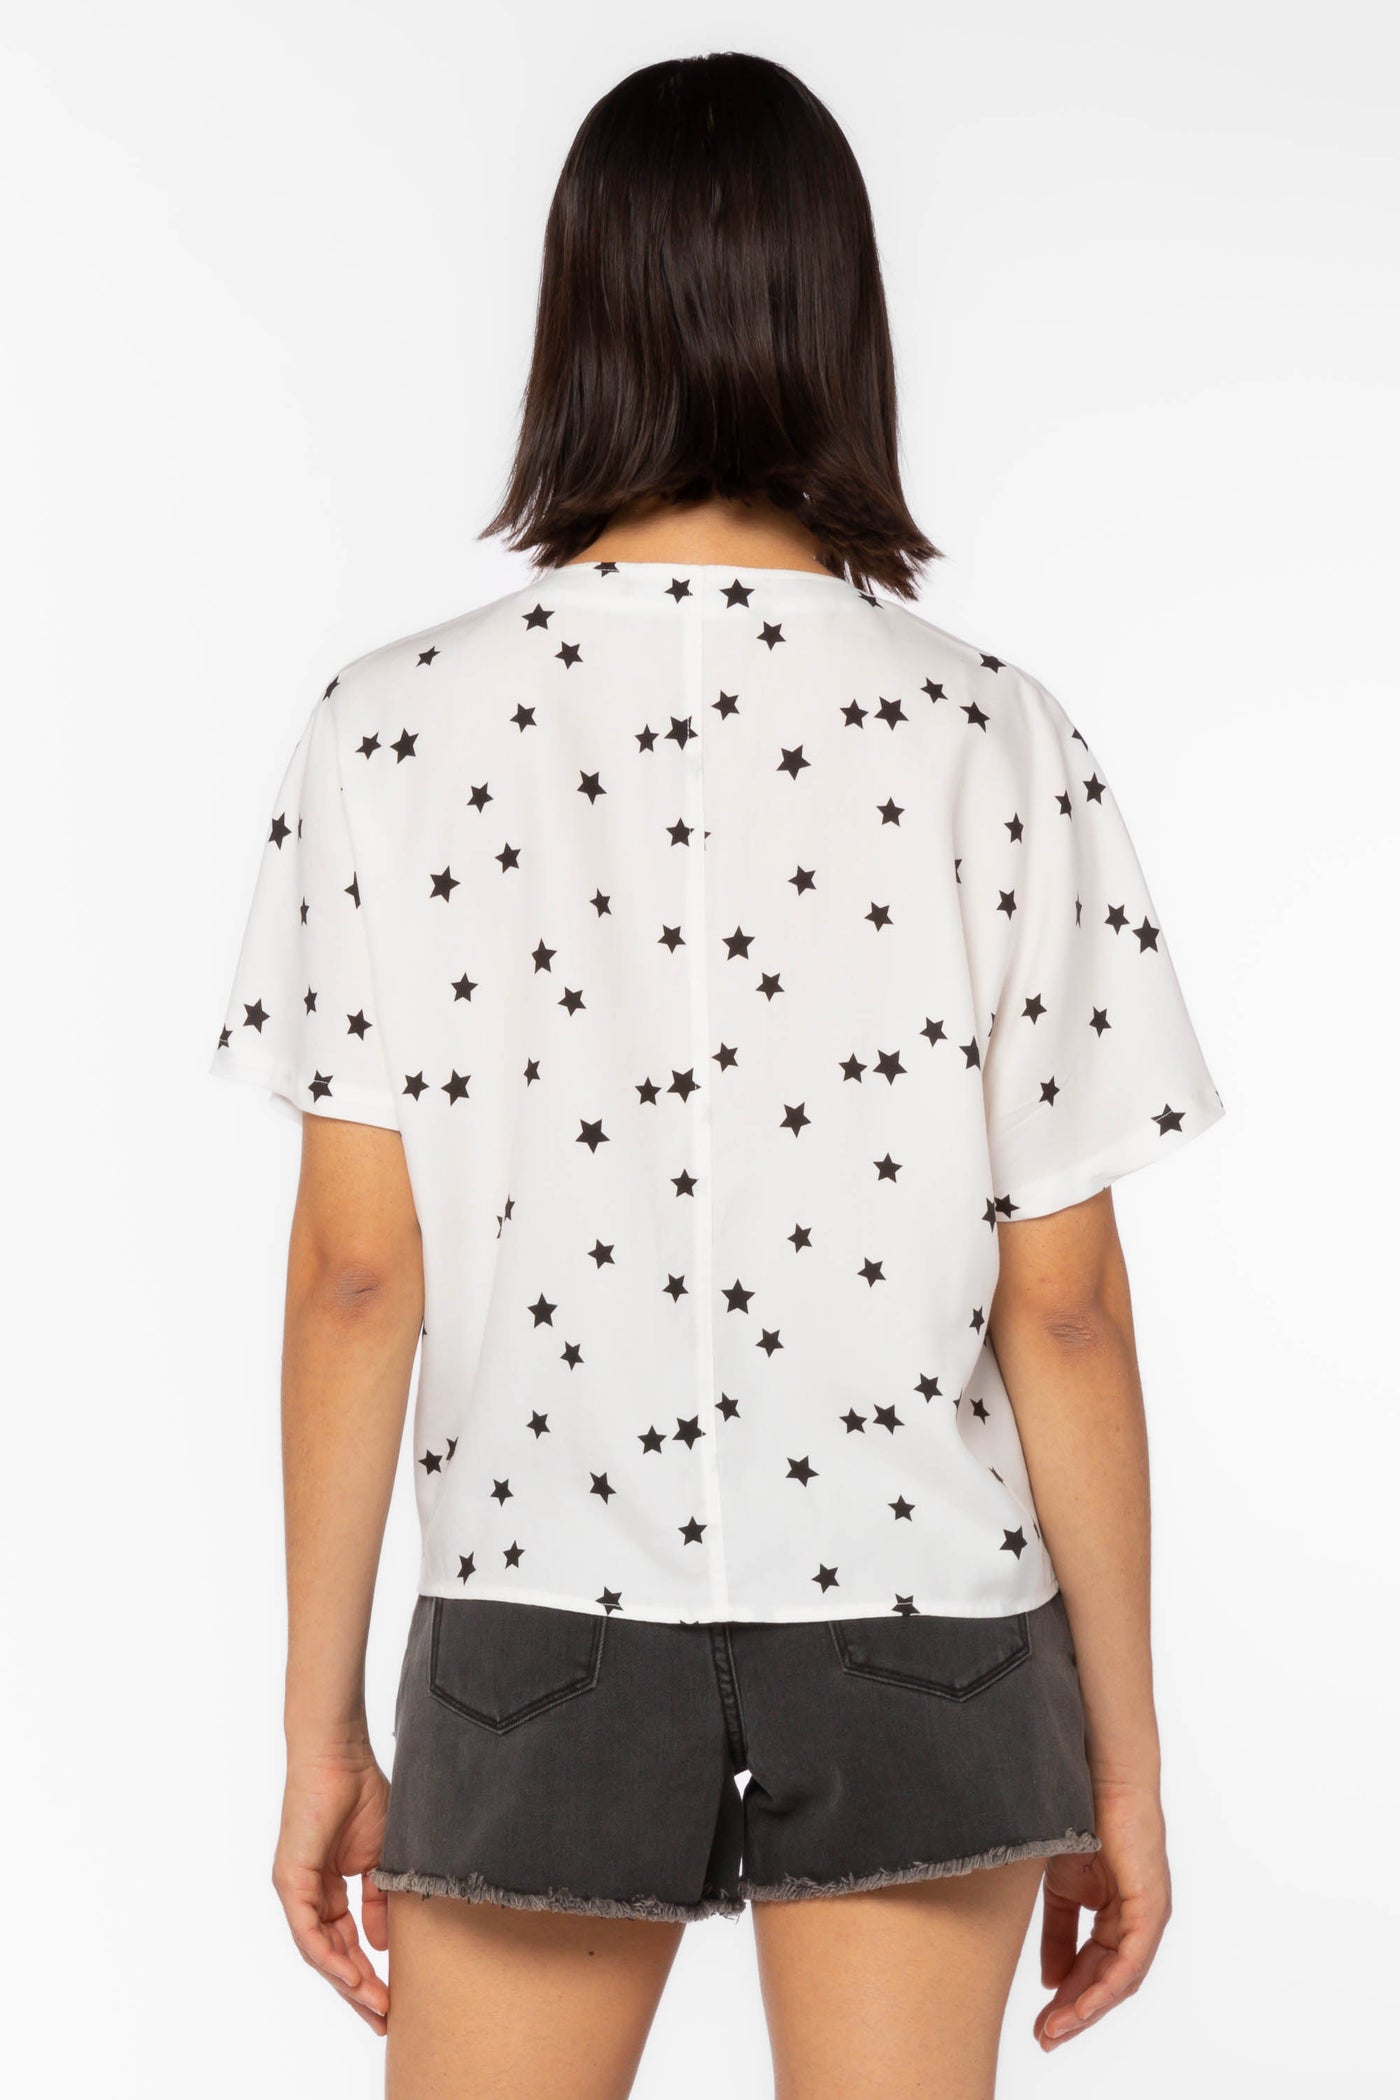 Annabelle Stars Shirt - Tops - Velvet Heart Clothing